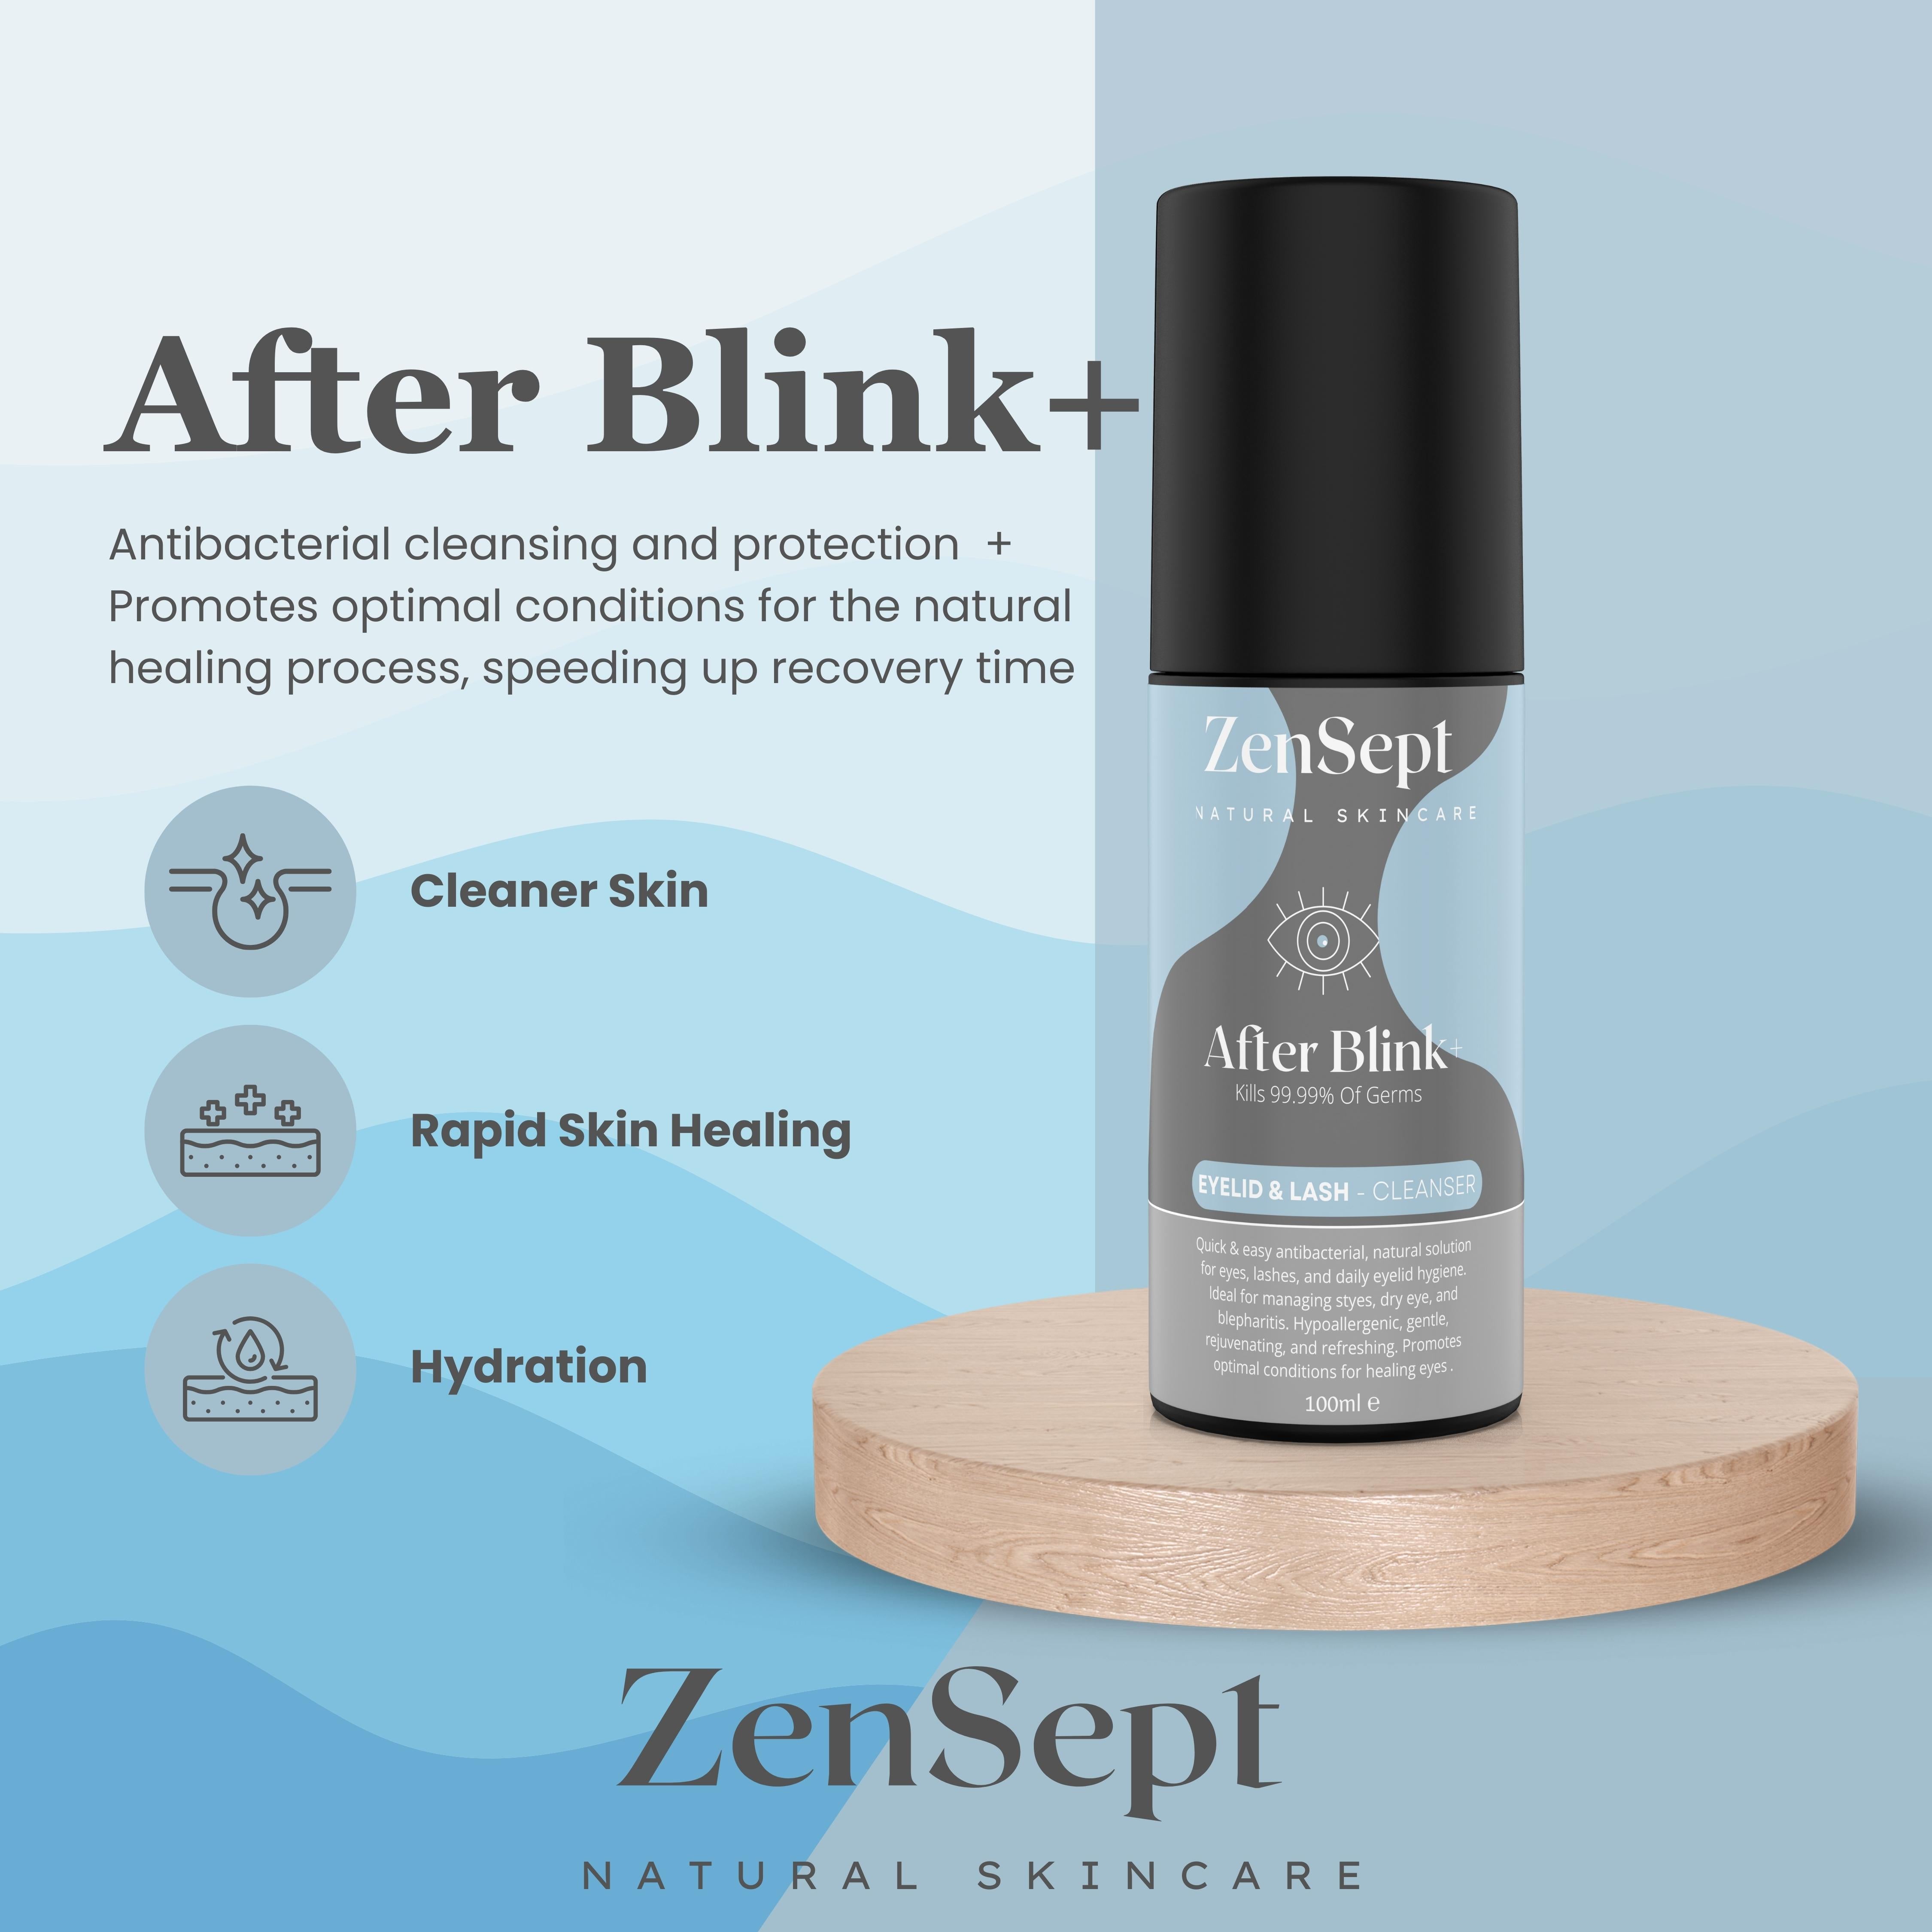 ZenSept - After Blink+ – ZenpSept